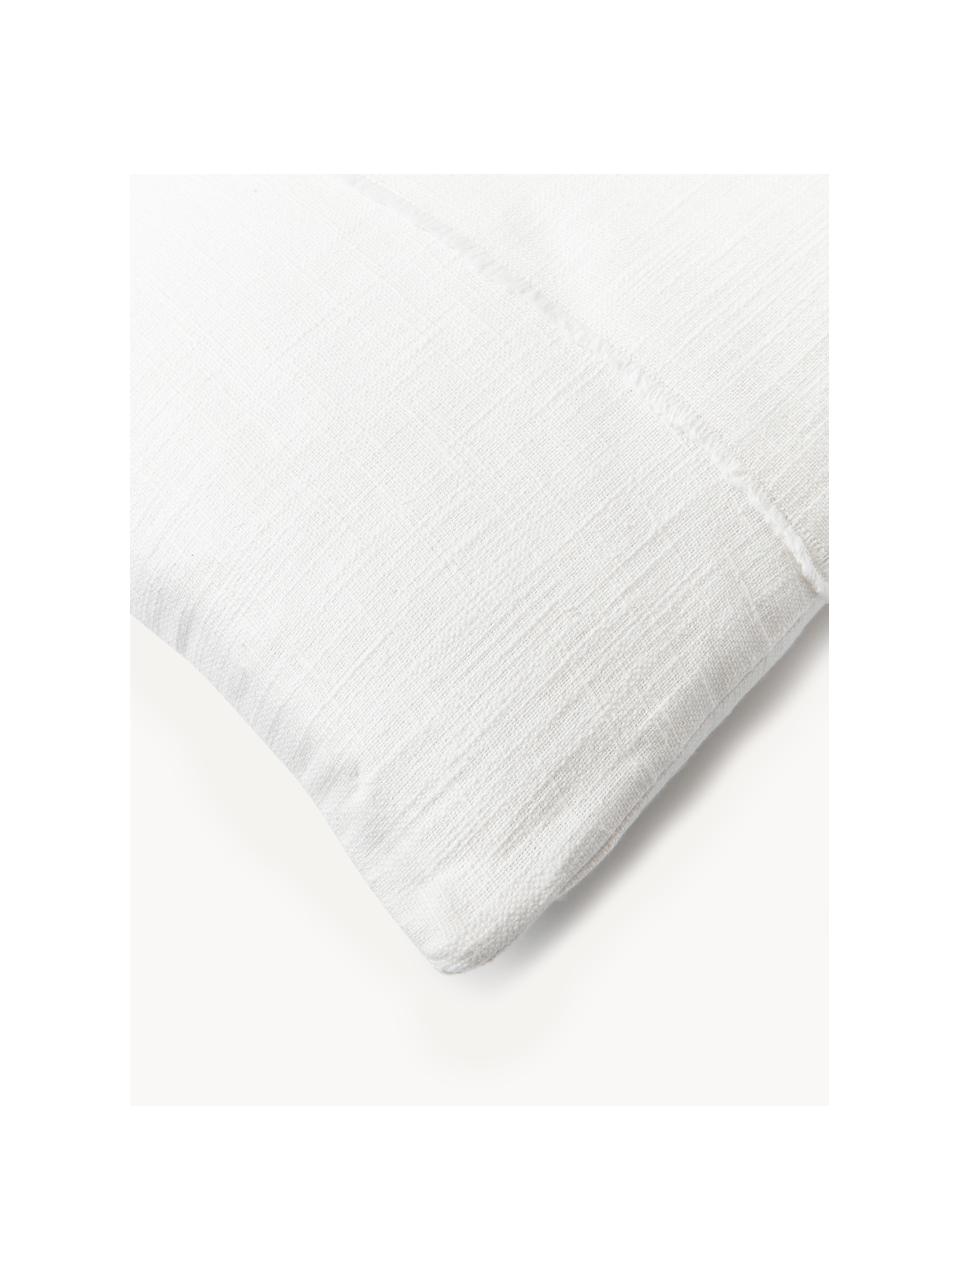 Funda de cojín de algodón con pespuntes Terre, 70% algodón, 30% lino, Blanco, An 30 x L 50 cm